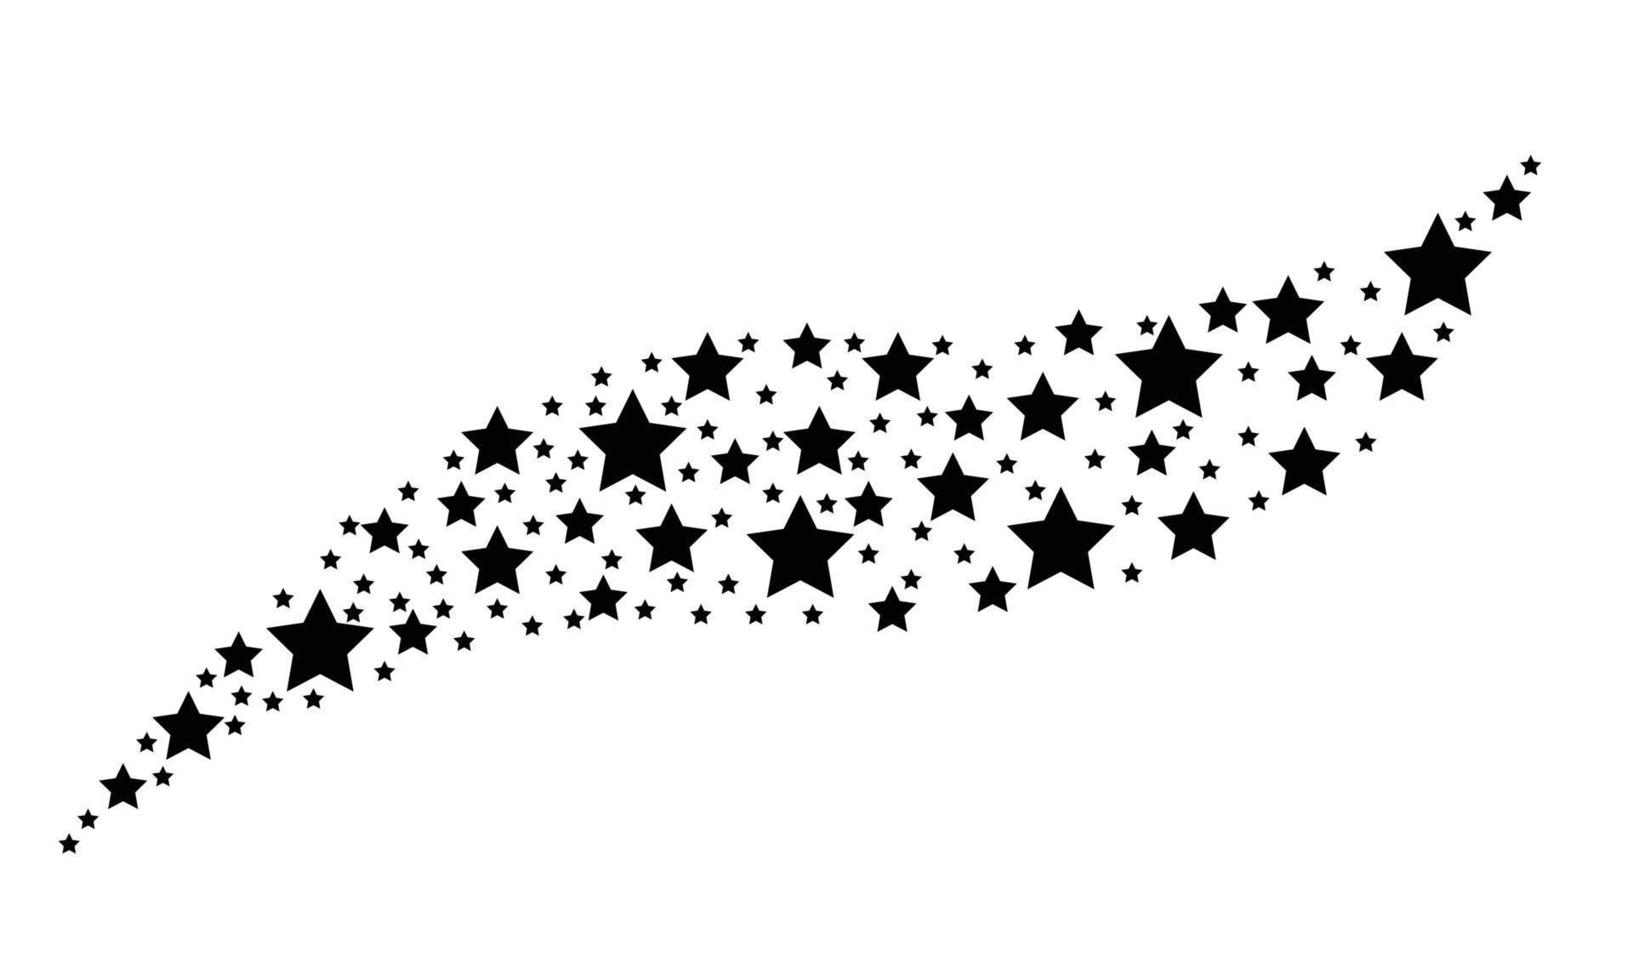 estrella de fuegos artificiales secuencia aleatoria de fuegos artificiales. el estilo del ejemplo del vector es símbolos icónicos grises planos en un fondo blanco. fuente de objetos combinada de iconos dispersos.